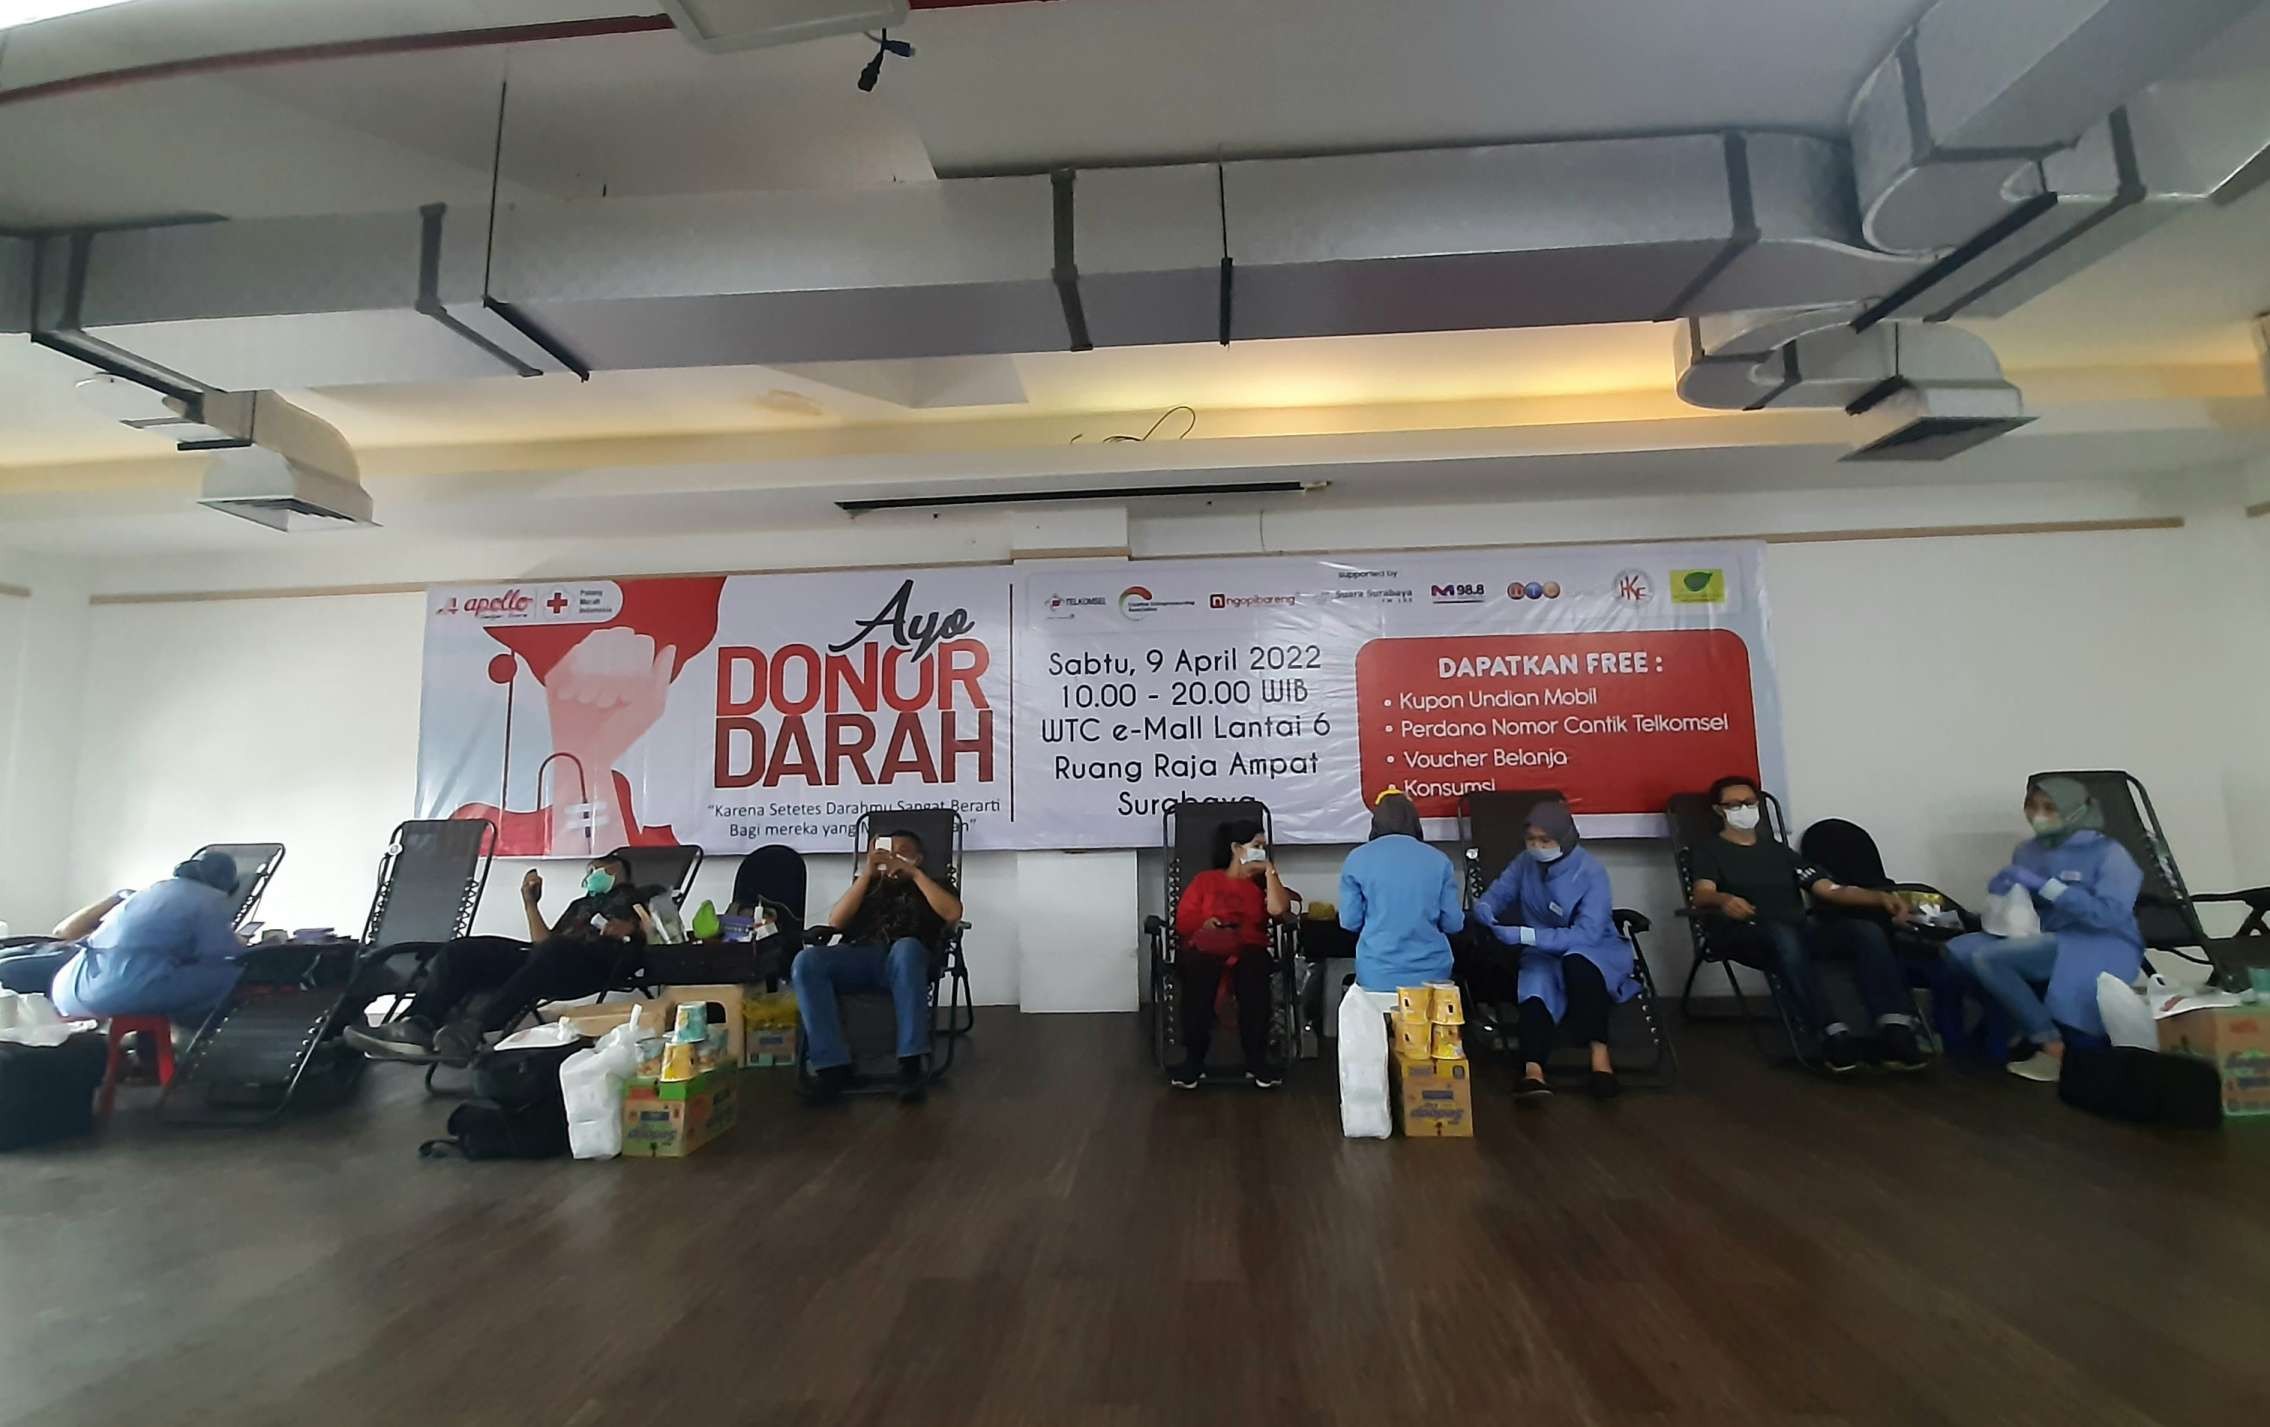 Acara donor darah yang diselenggarakan Apollo Gadget Store di Ruang Raja Ampat WTC Mall Surabaya, Sabtu 9 April 2022. (Foto: Pita Sari/Ngopibareng.id)